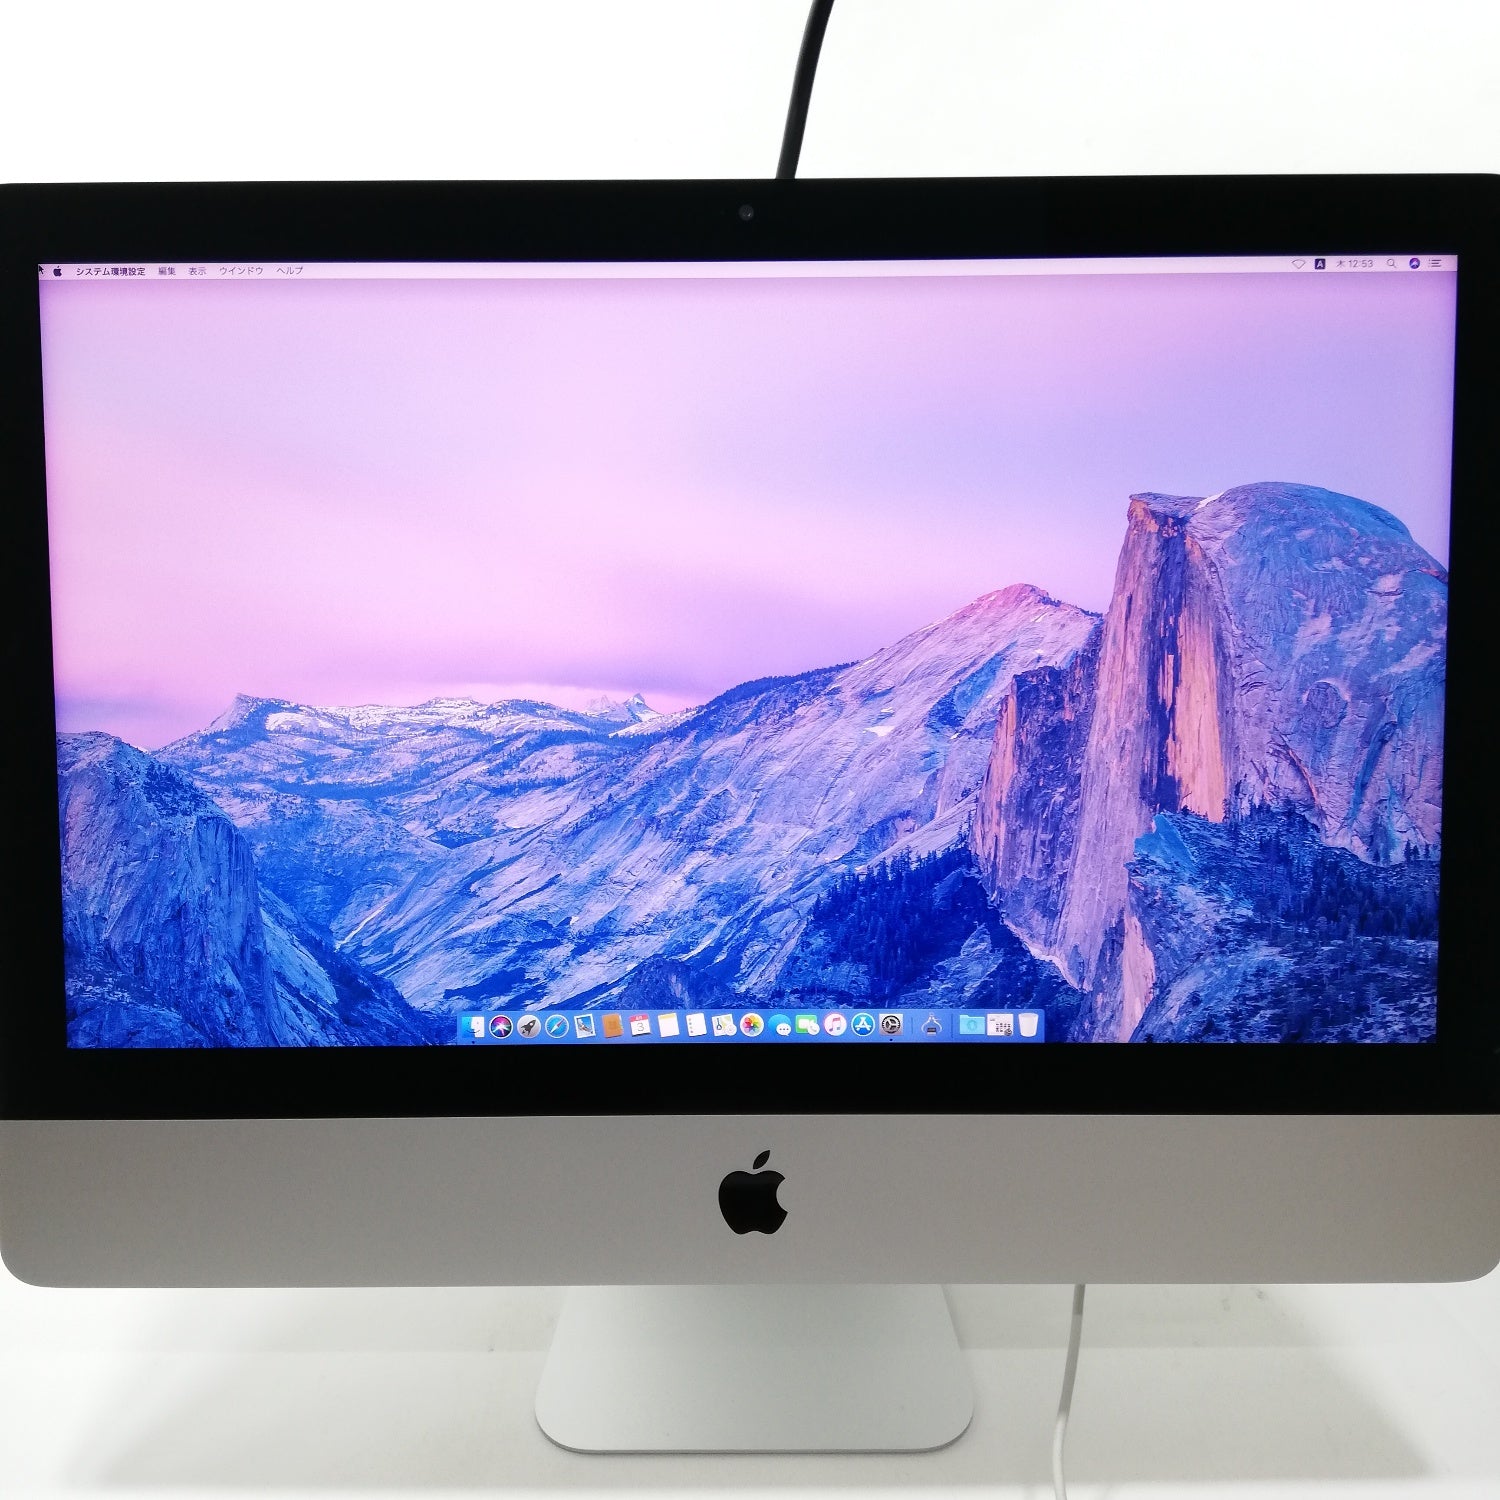 Macデスクトップアップル iMac ディスプレイ 21インチ HDDなし - Mac 